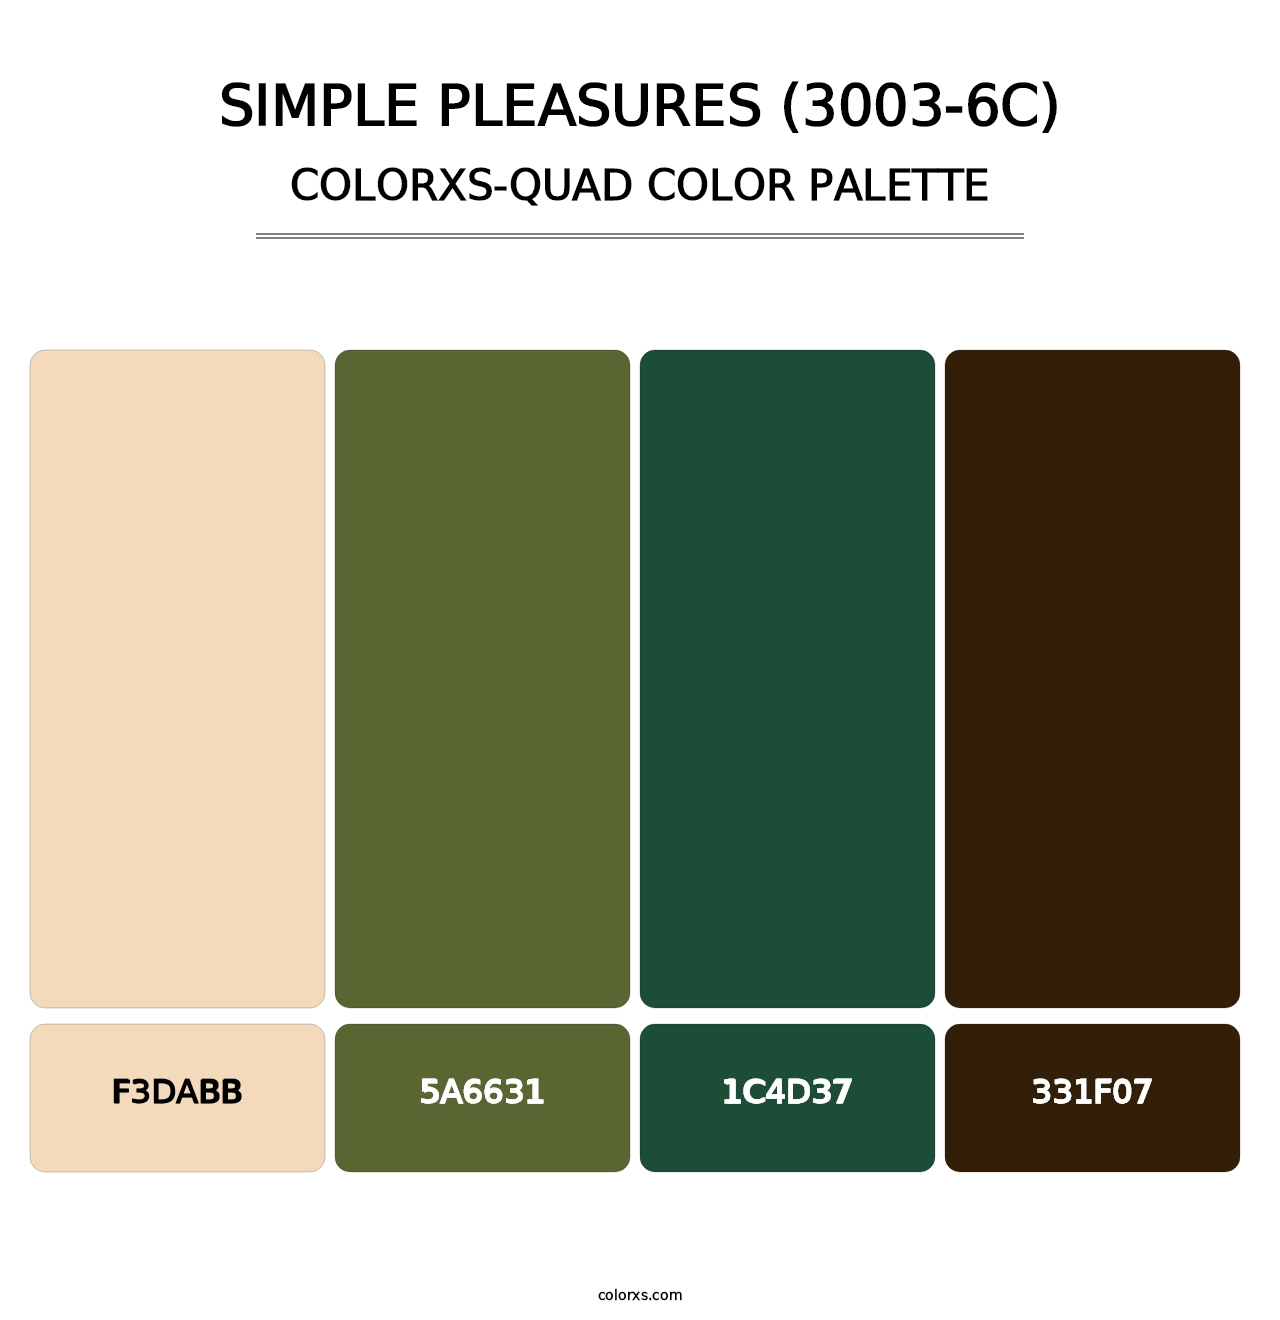 Simple Pleasures (3003-6C) - Colorxs Quad Palette